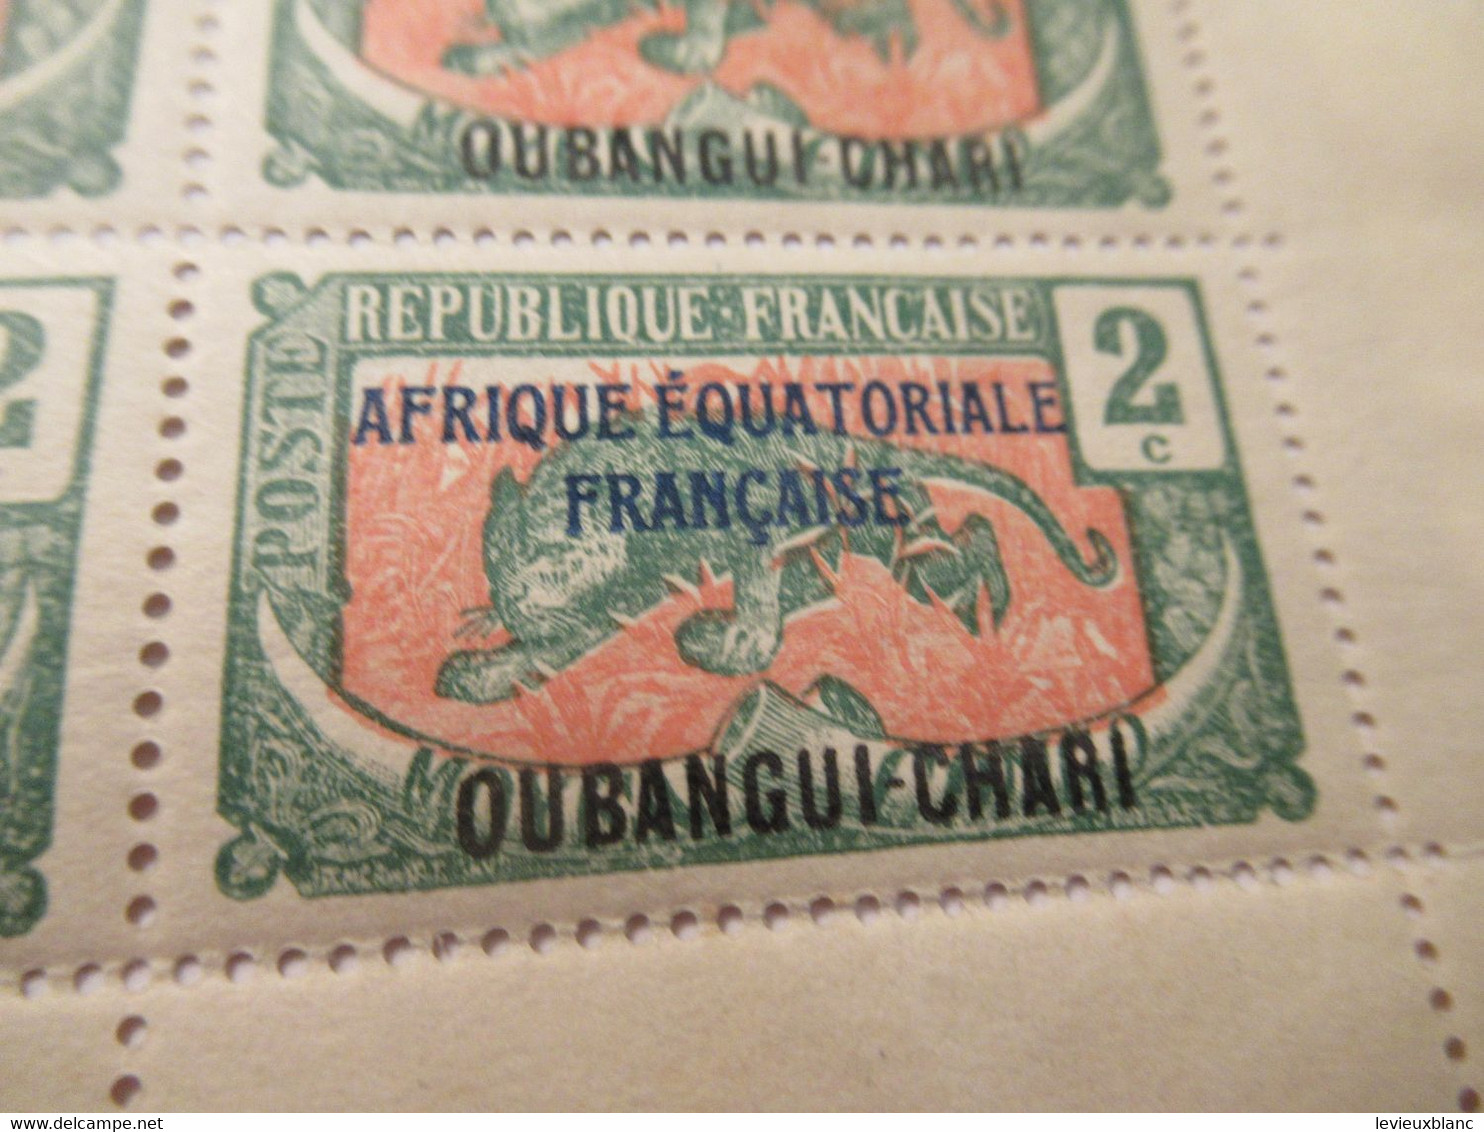 Plaque Complète De 25 Timbres 2C Anciens/Moyen Congo 1907 Surchargés AEF/Oubangui Chari1/Panthère/1924-25     TIMB155 - Autres - Afrique